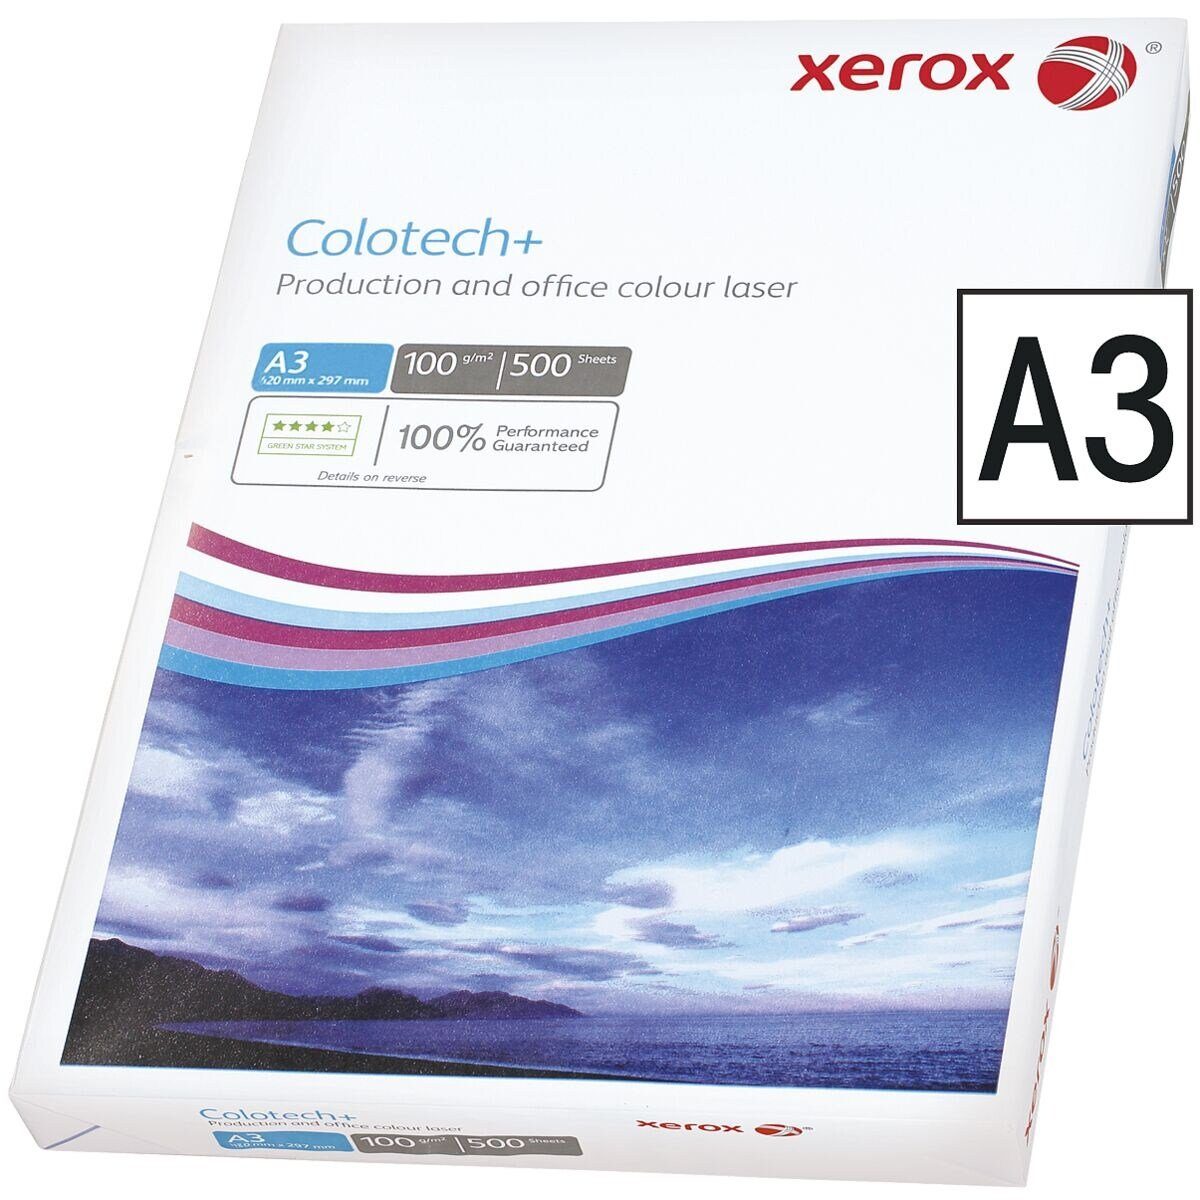 Xerox Farblaser-Druckerpapier Colotech+, Format DIN A3, 500 g/m², 100 Blatt